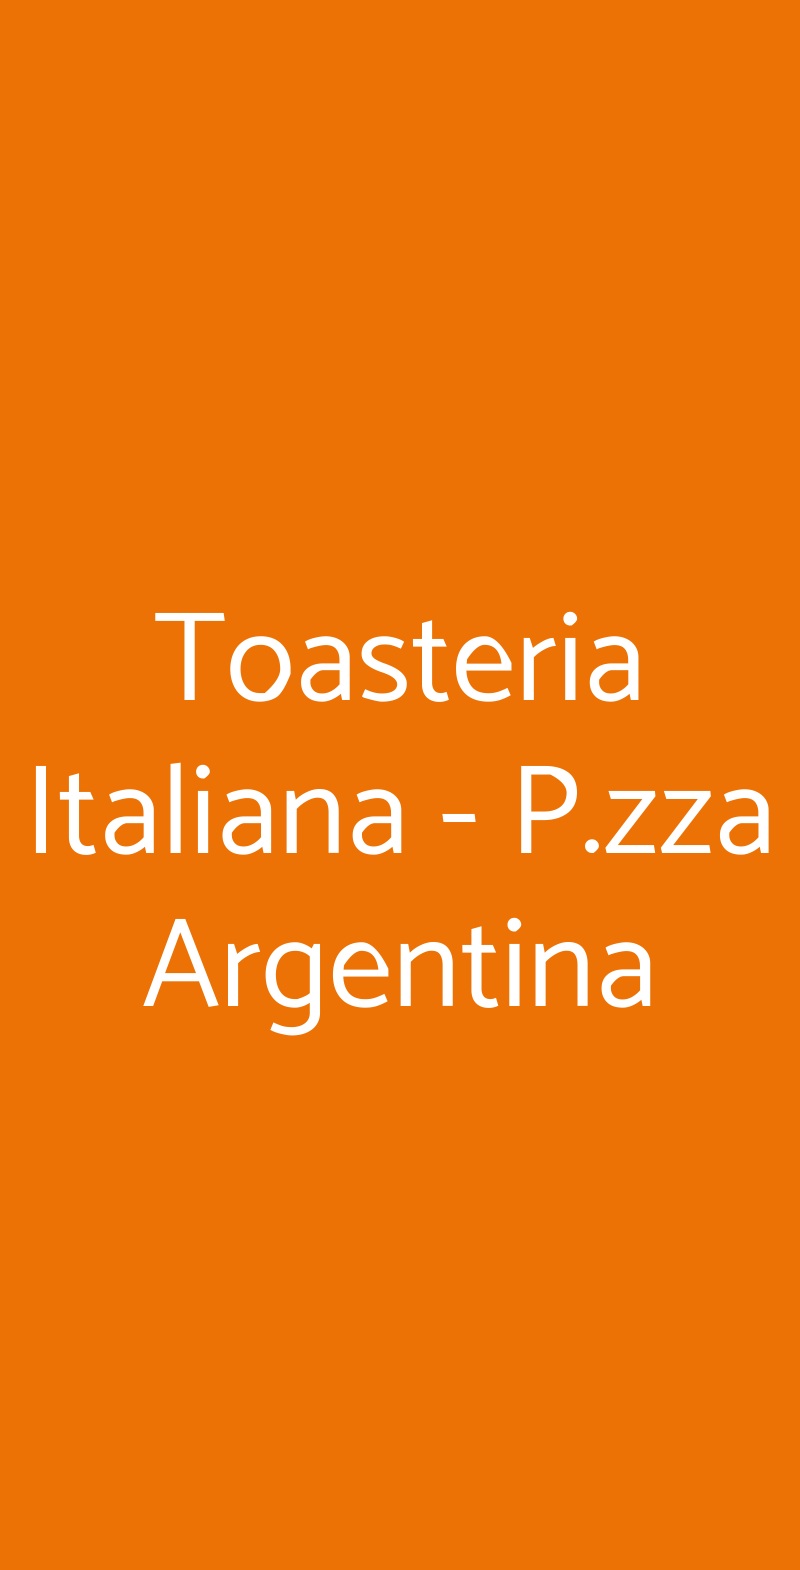 Toasteria Italiana - P.zza Argentina Milano menù 1 pagina